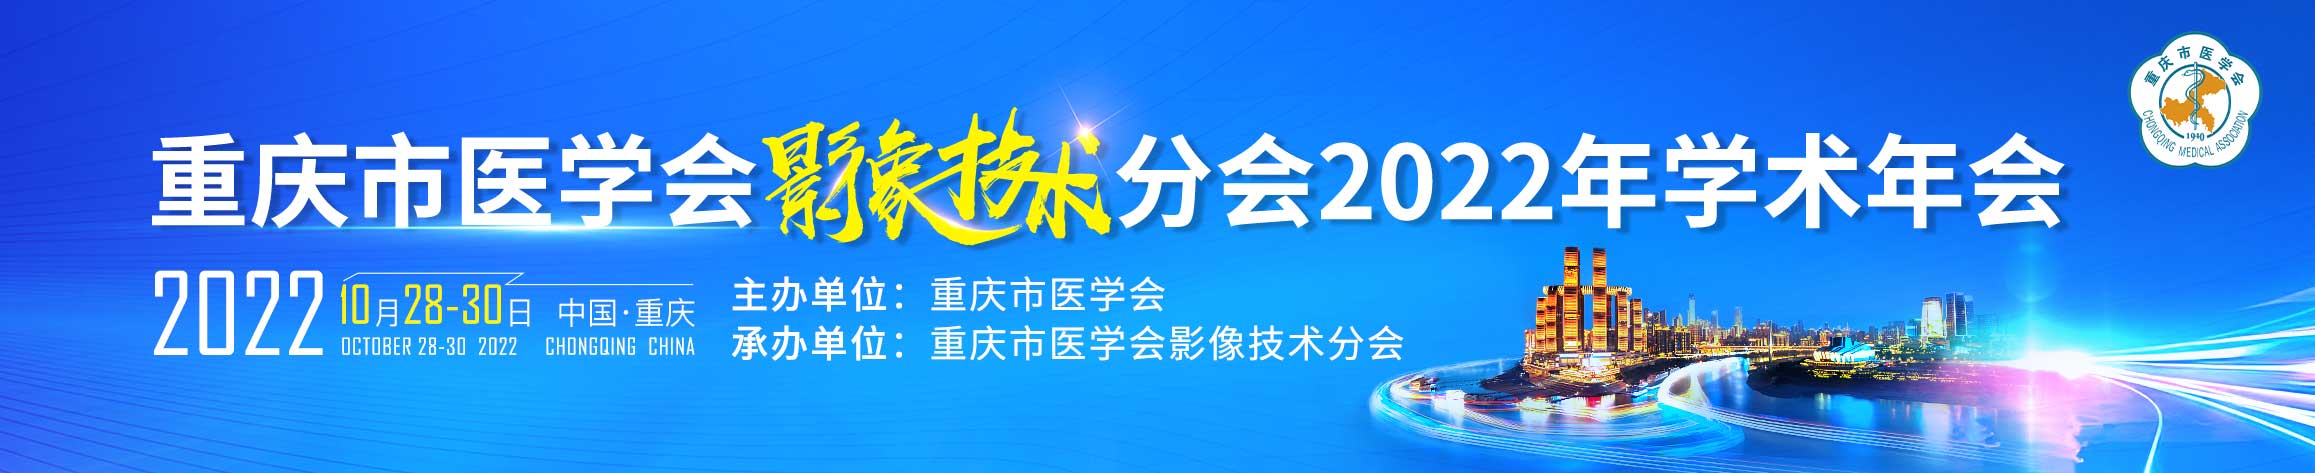 重庆市医学会影像技术分会2022年学术年会